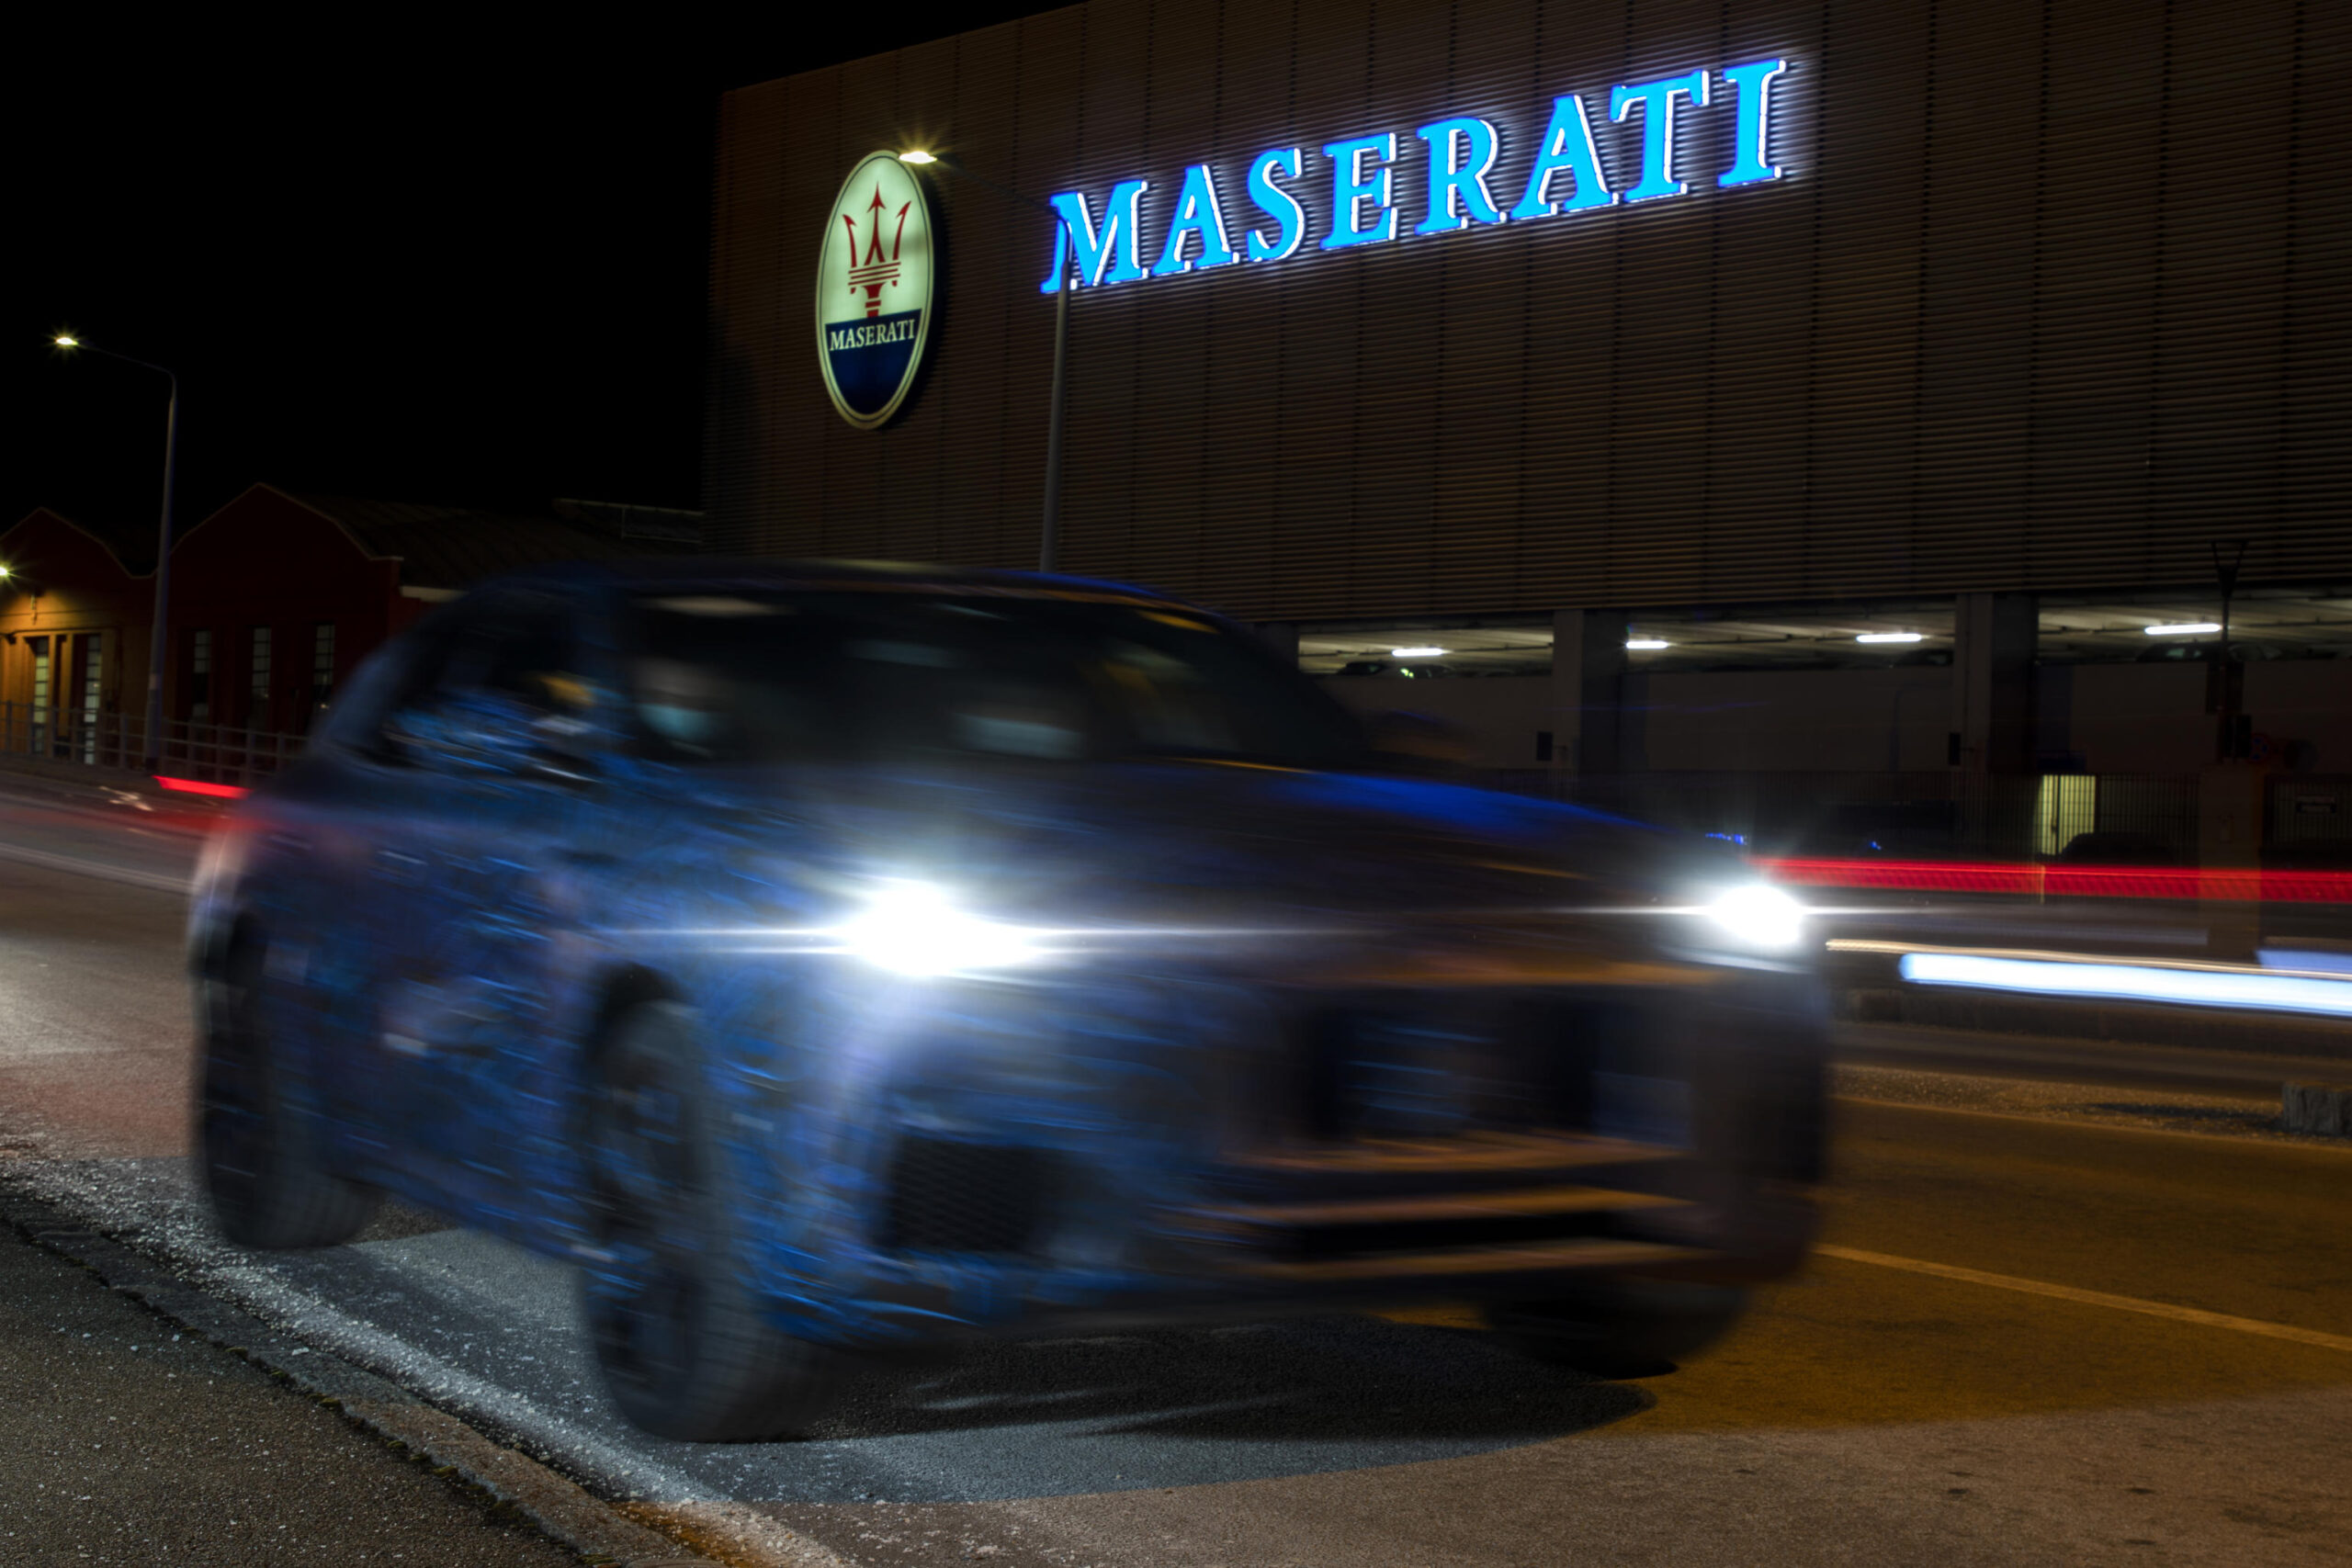 Maserati tra luci e ombre: cala la produzione e arriva la cassa integrazione